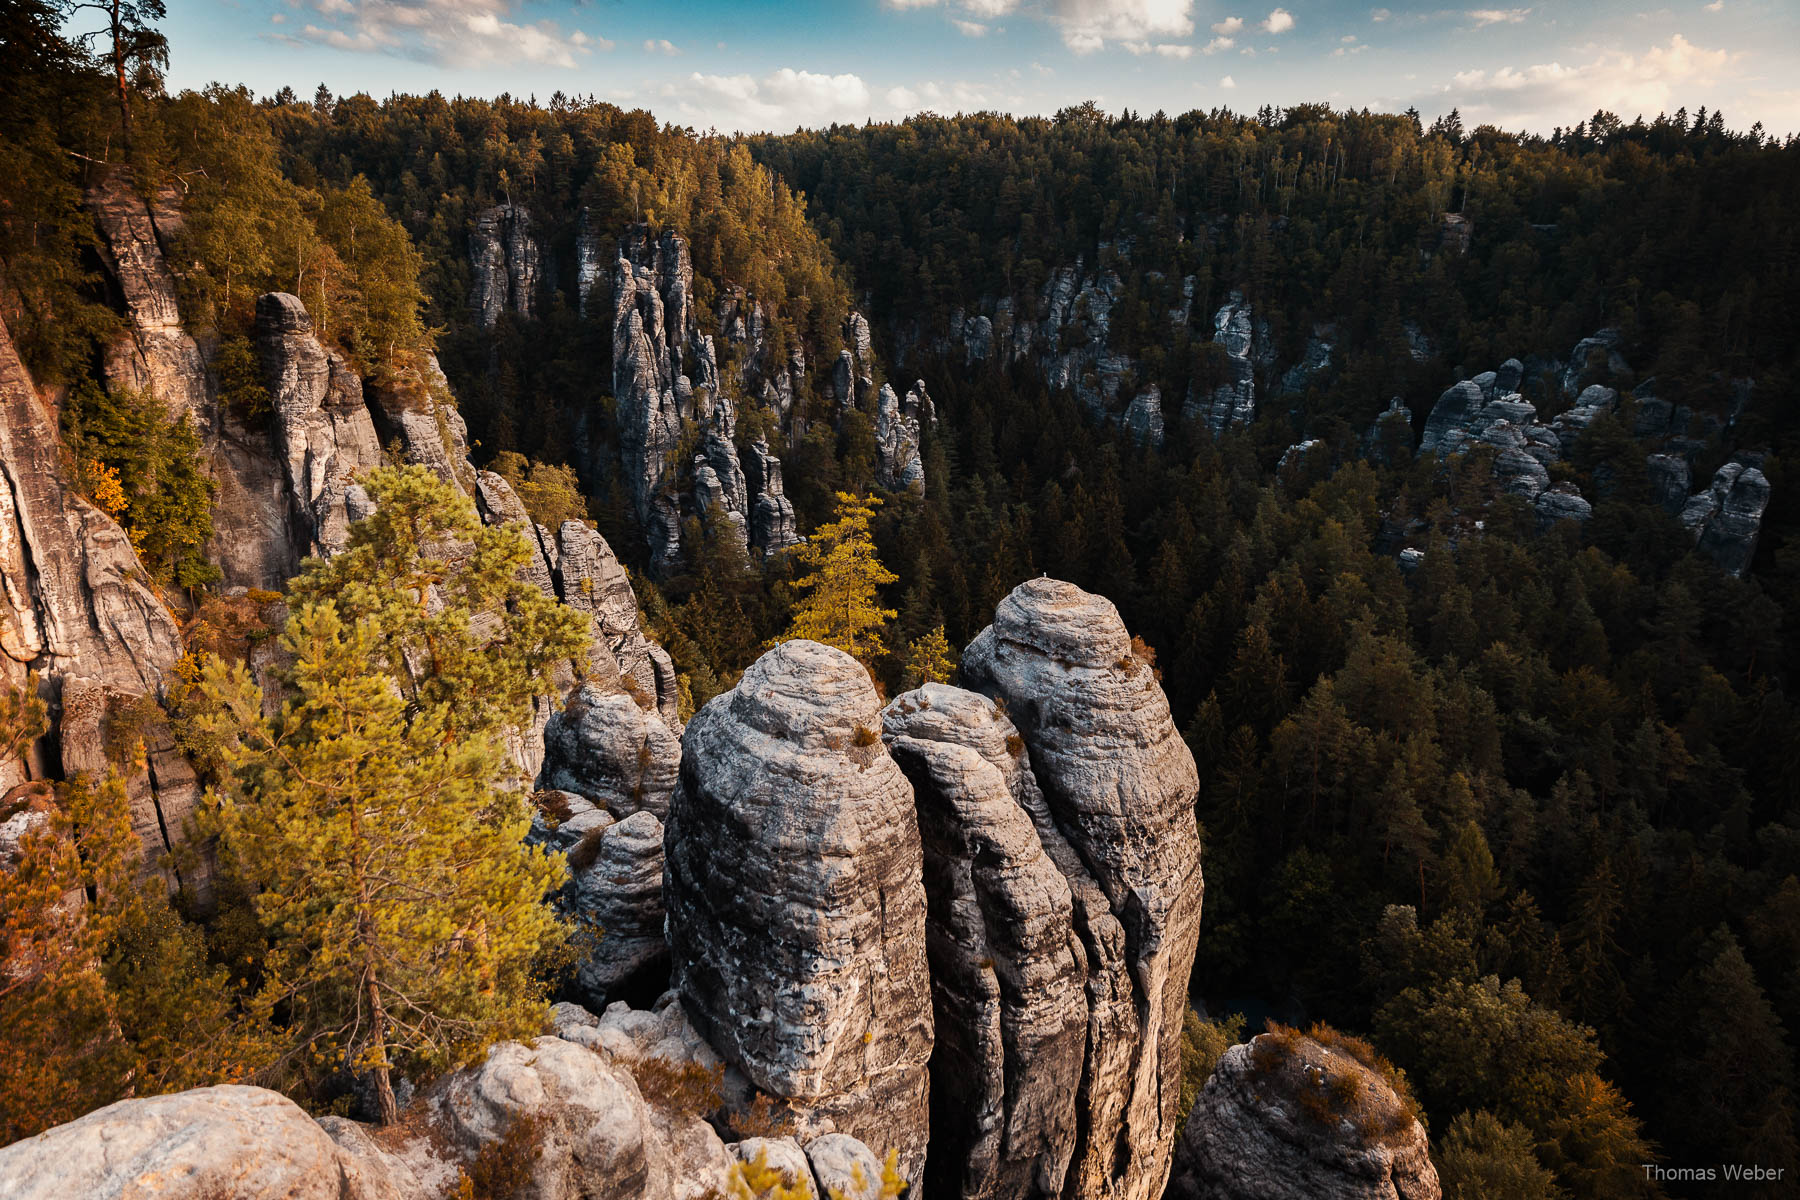 Fototour durch das Elbsandsteingebirge in der sächsischen Schweiz, Fotograf Thomas Weber aus Oldenburg